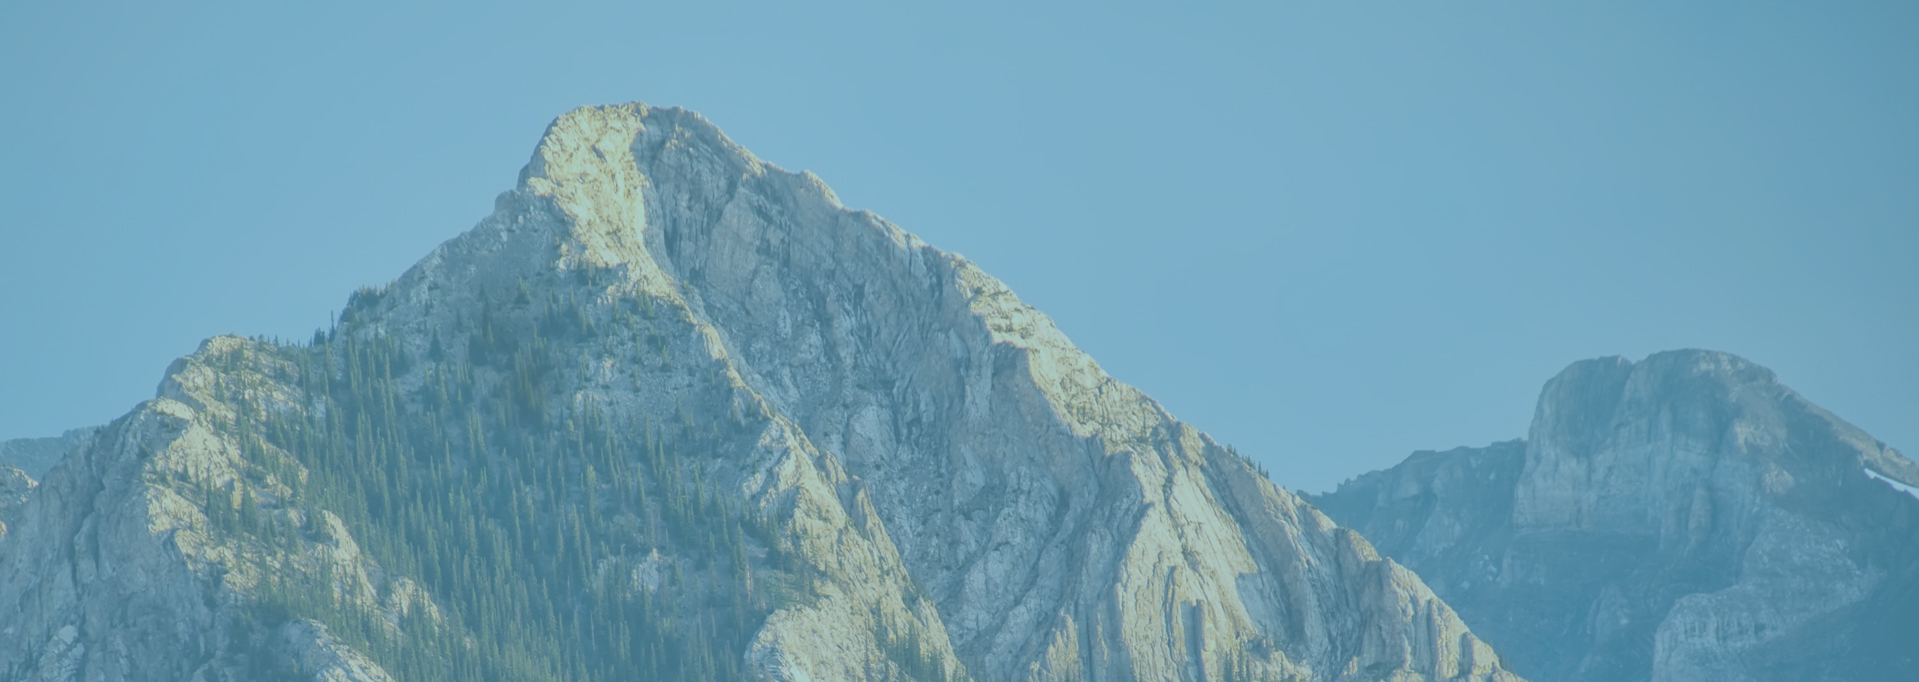 Mountain image background